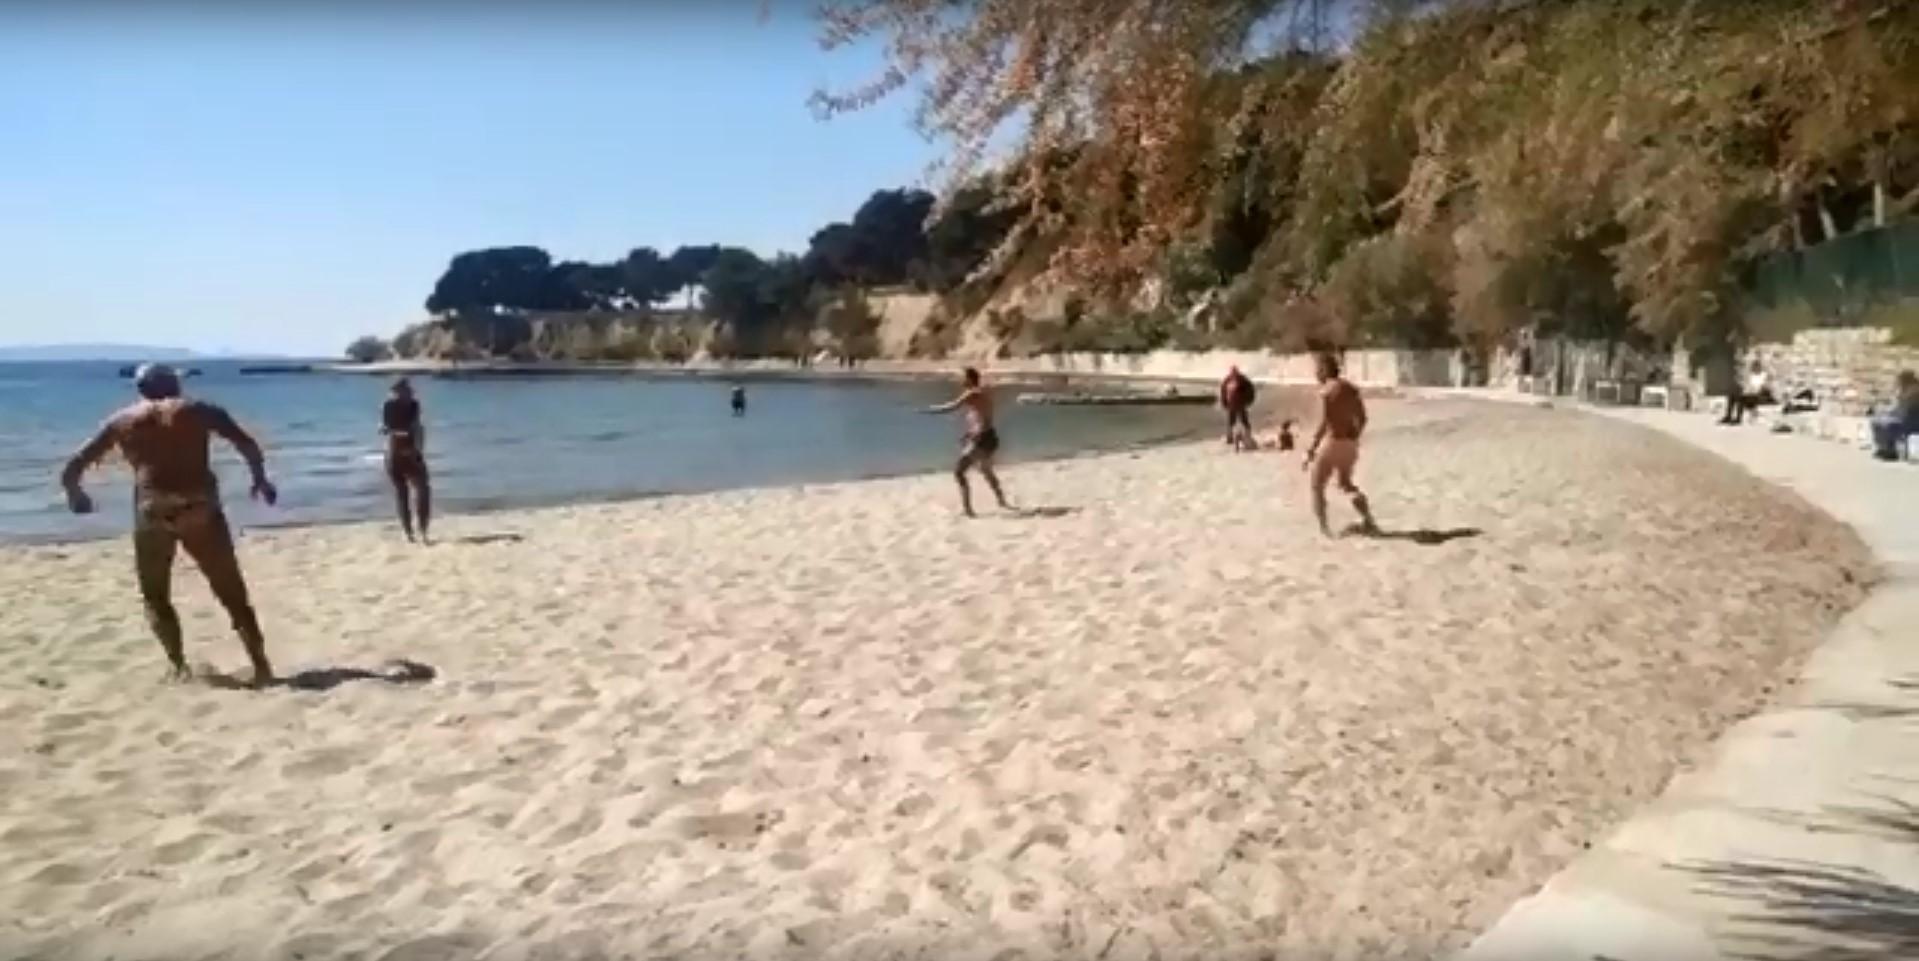 Dok se Hrvatska bori s virusom, oni uživaju u piciginu na plaži